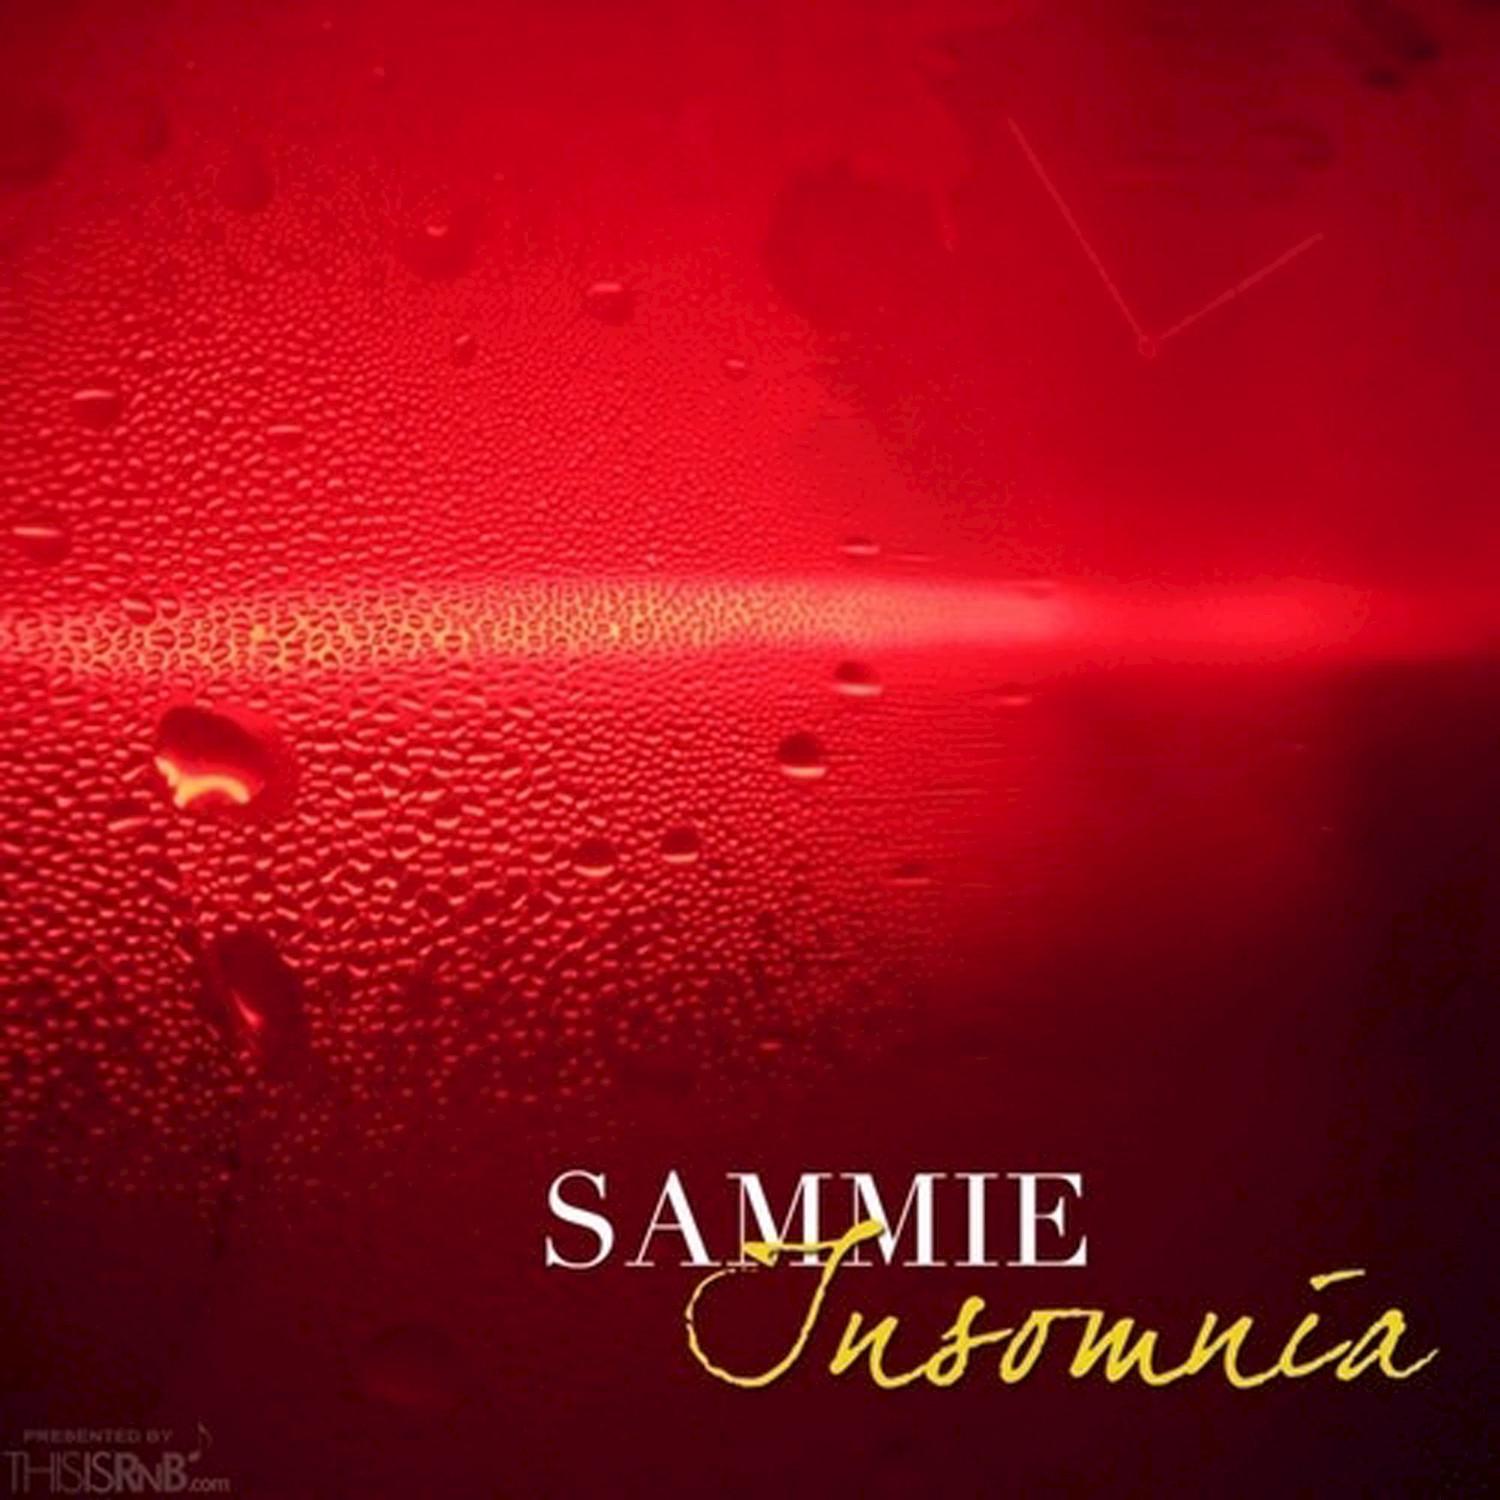 Sammie love